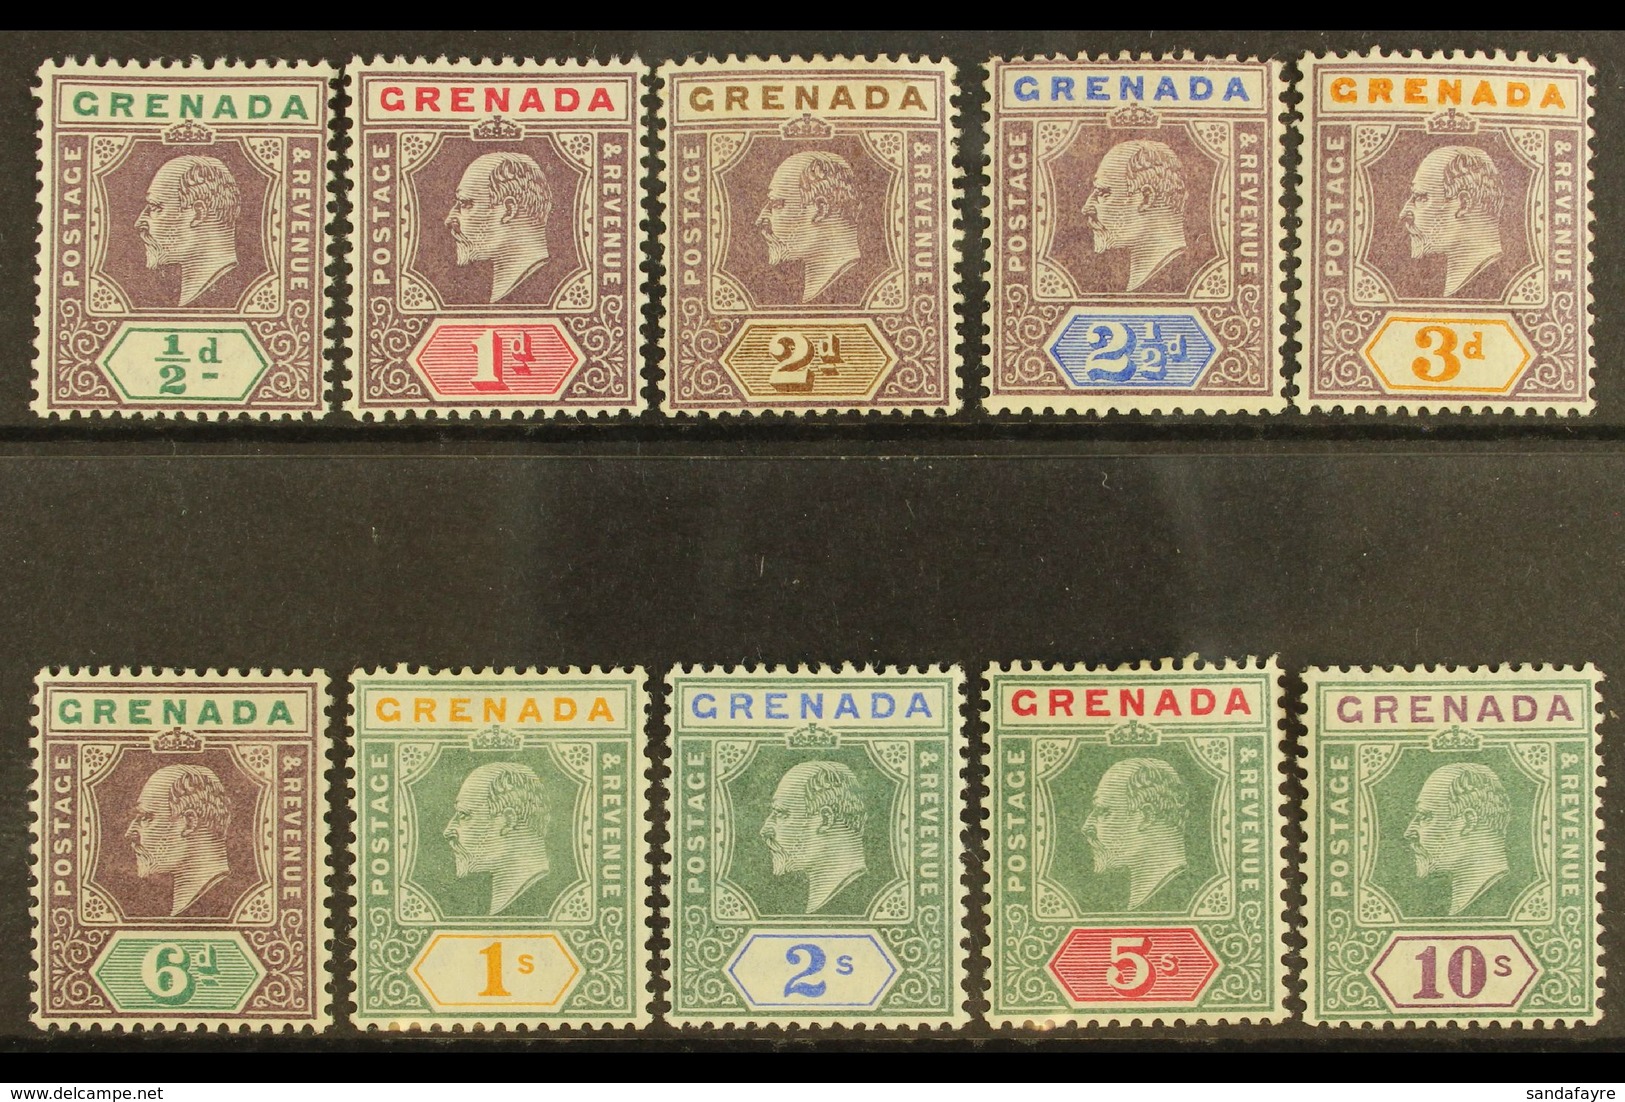 1902 1902 Complete Definitive Set, SG 57/66, Fine Mint. (10 Stamps) For More Images, Please Visit Http://www.sandafayre. - Granada (...-1974)